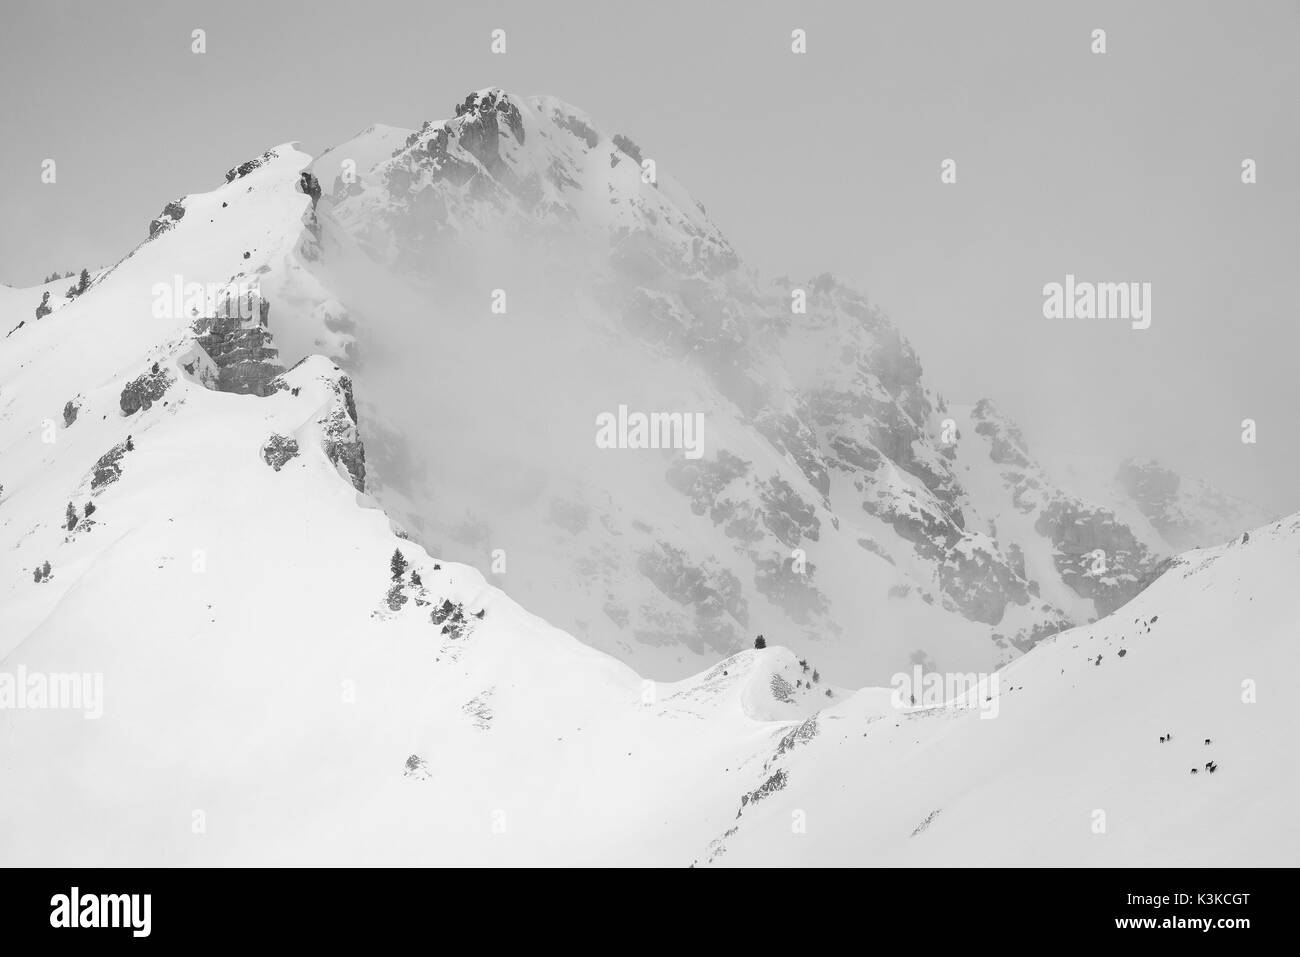 Eine kleine Gruppe Gämsen auf rechts unten im Bild gegen die Größe und die Unwirtlichkeit bei schlechtem Wetter im Winter in einem Berghang der Schöttelkarspitze in der Soierngruppe im Karwendel. Stockfoto